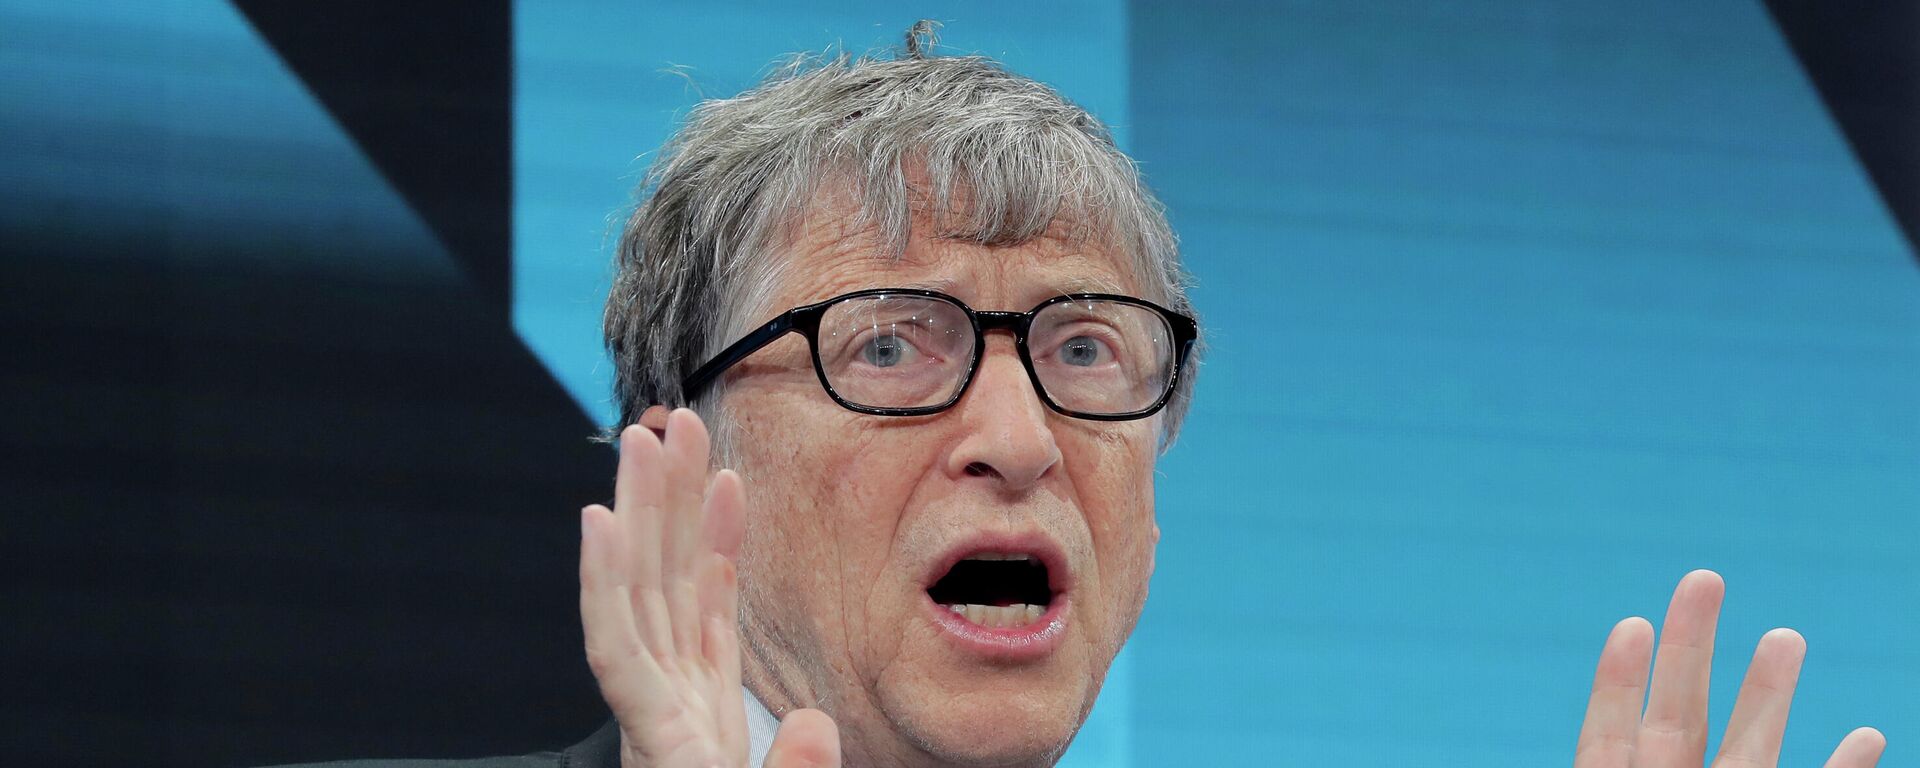 Bill Gates, multimillonario estadounidense, durante el Foro Económico Mundial en Davos (Suiza), el 22 de enero del 2019 - Sputnik Mundo, 1920, 10.11.2021